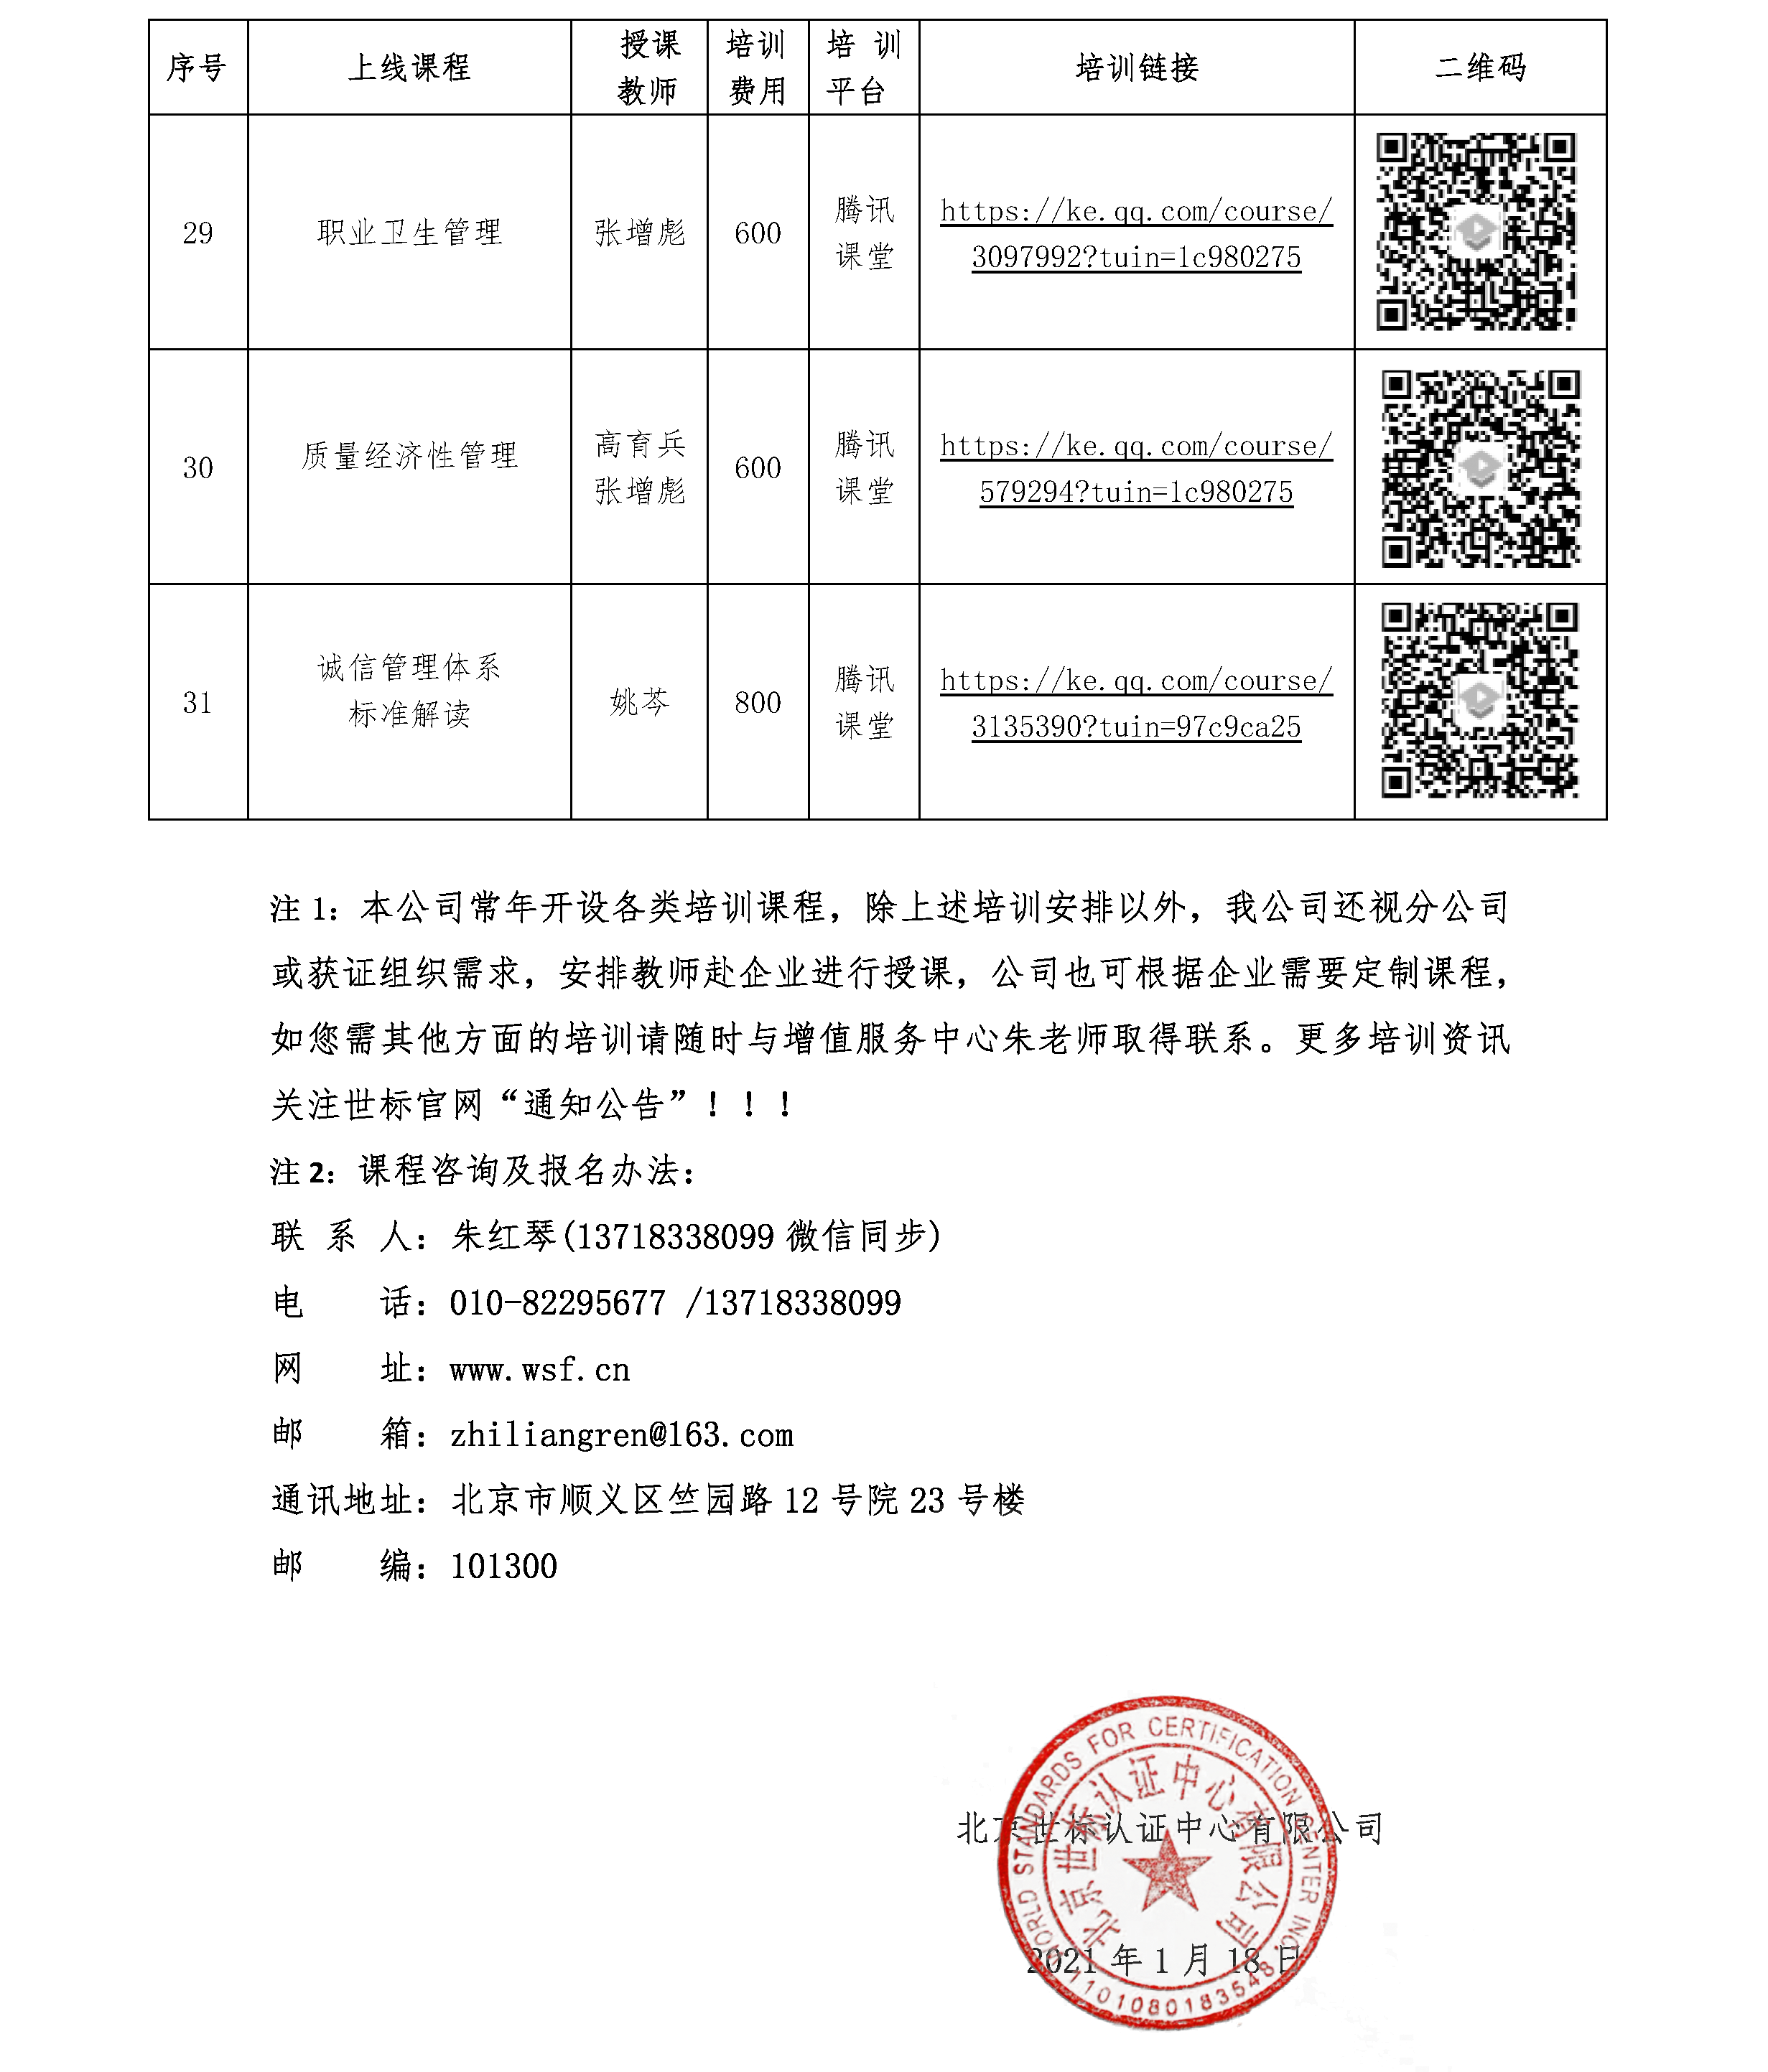 北京世标认证中心有限公司/国培认证培训（北京）中心 2021年一季度培训课程 (图5)